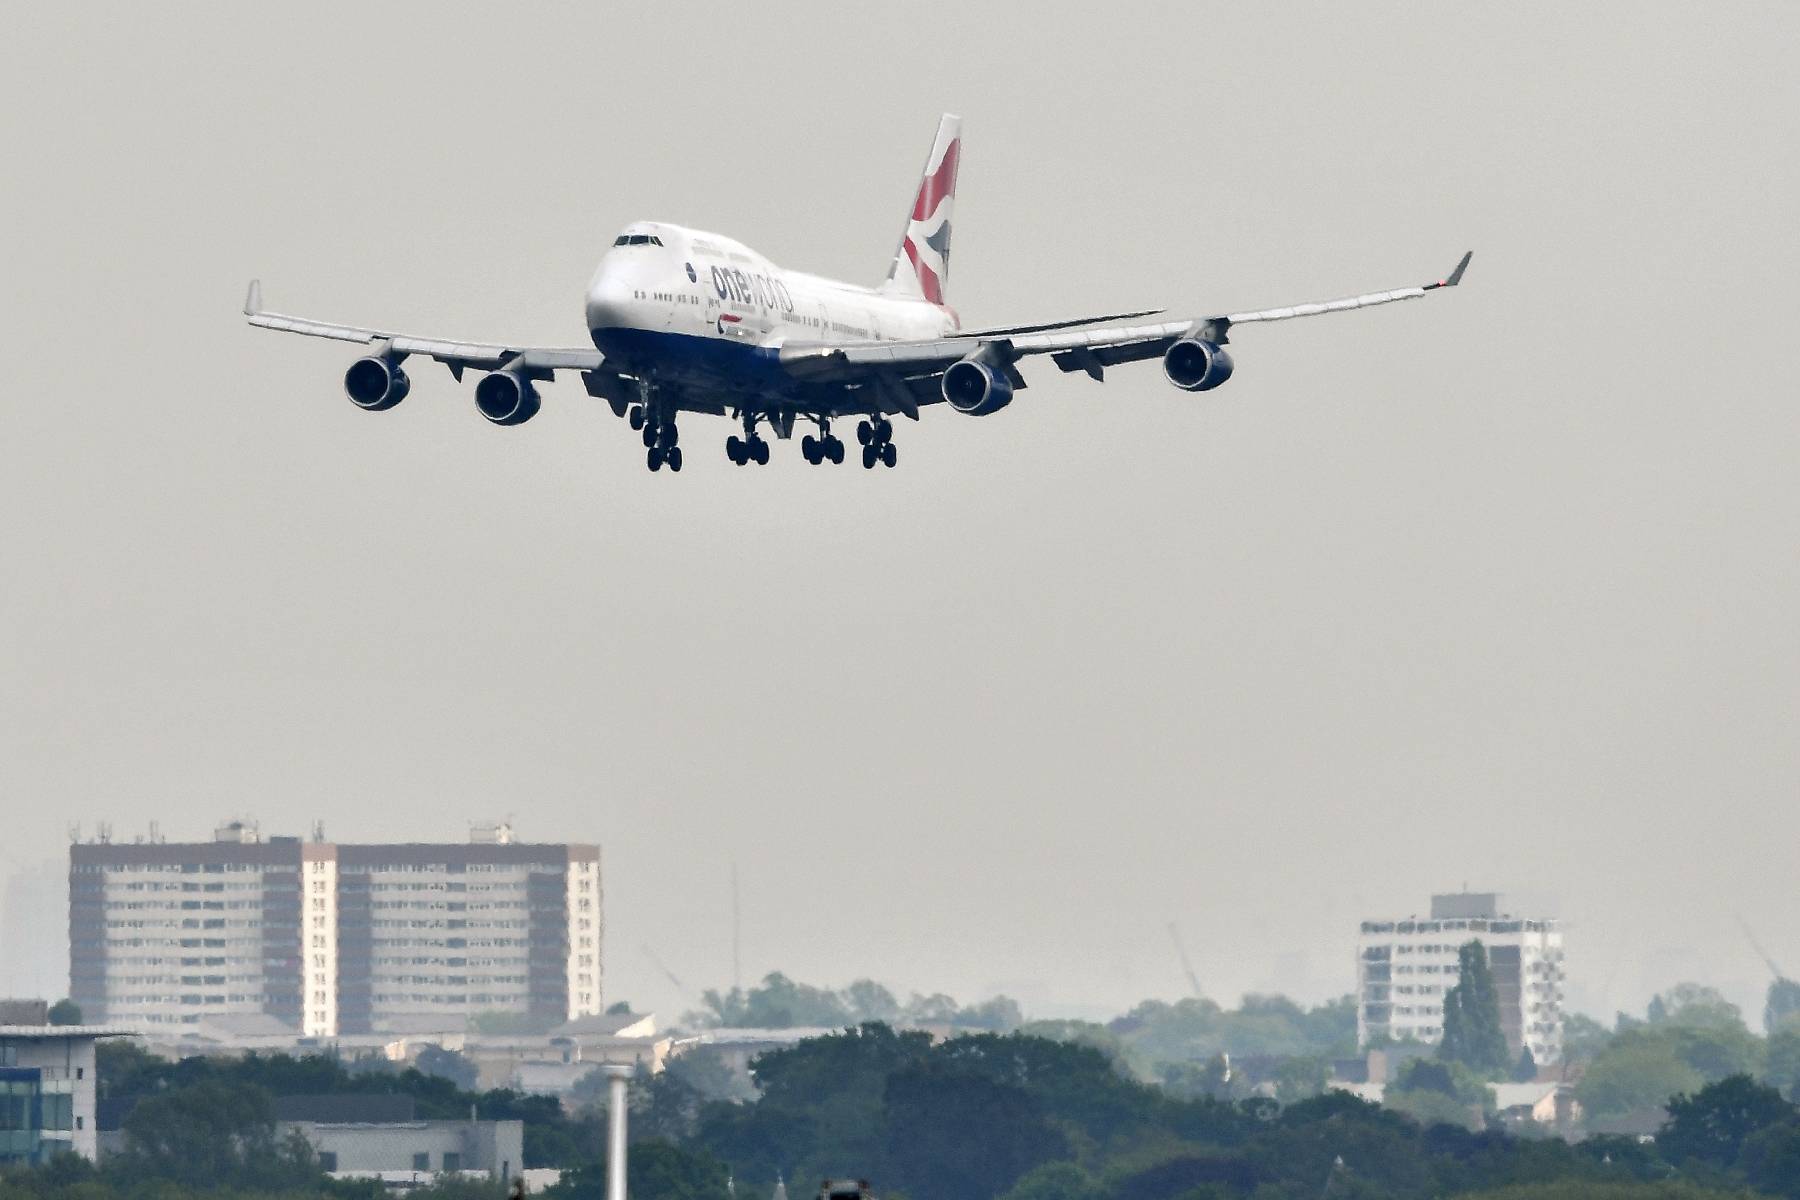 Boeing fait ses adieux au 747, qui a démocratisé le transport aérien, avec John Travolta en guest-star